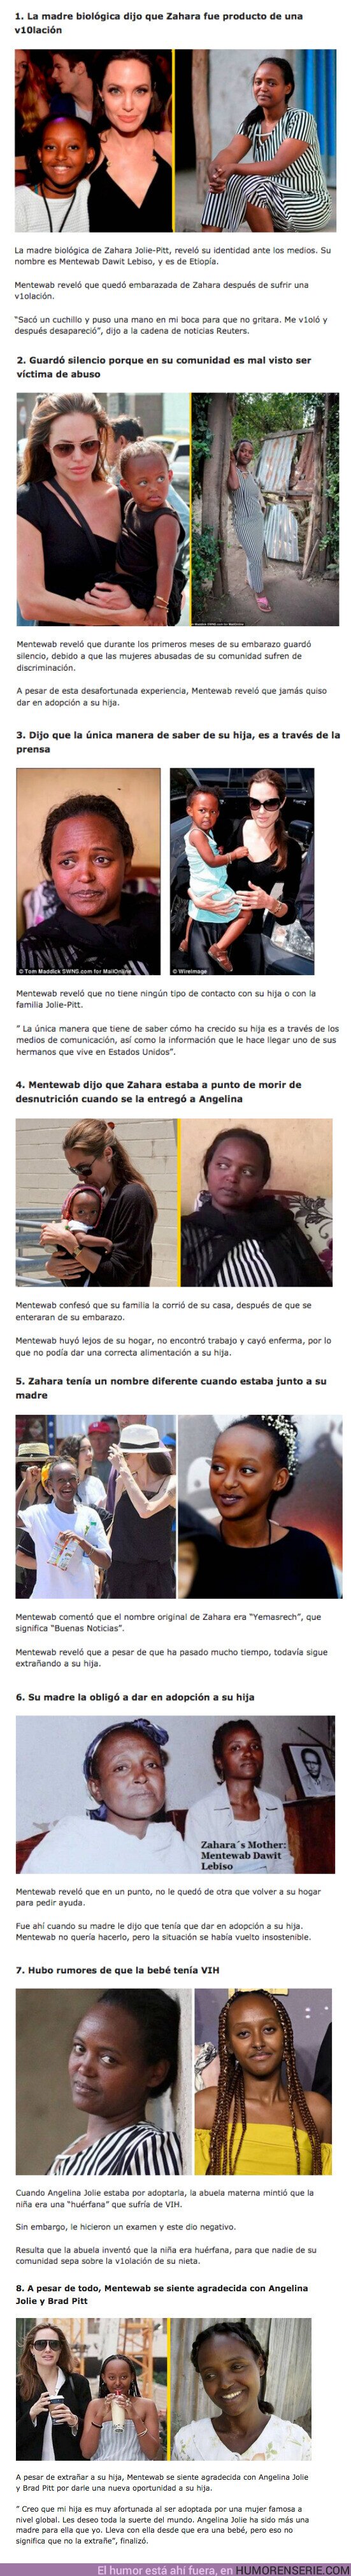 95570 - GALERÍA: Aparece la madre biológica de la hija de Angelina Jolie y habló sobre las 8 Cosas que sucedieron durante la adopción